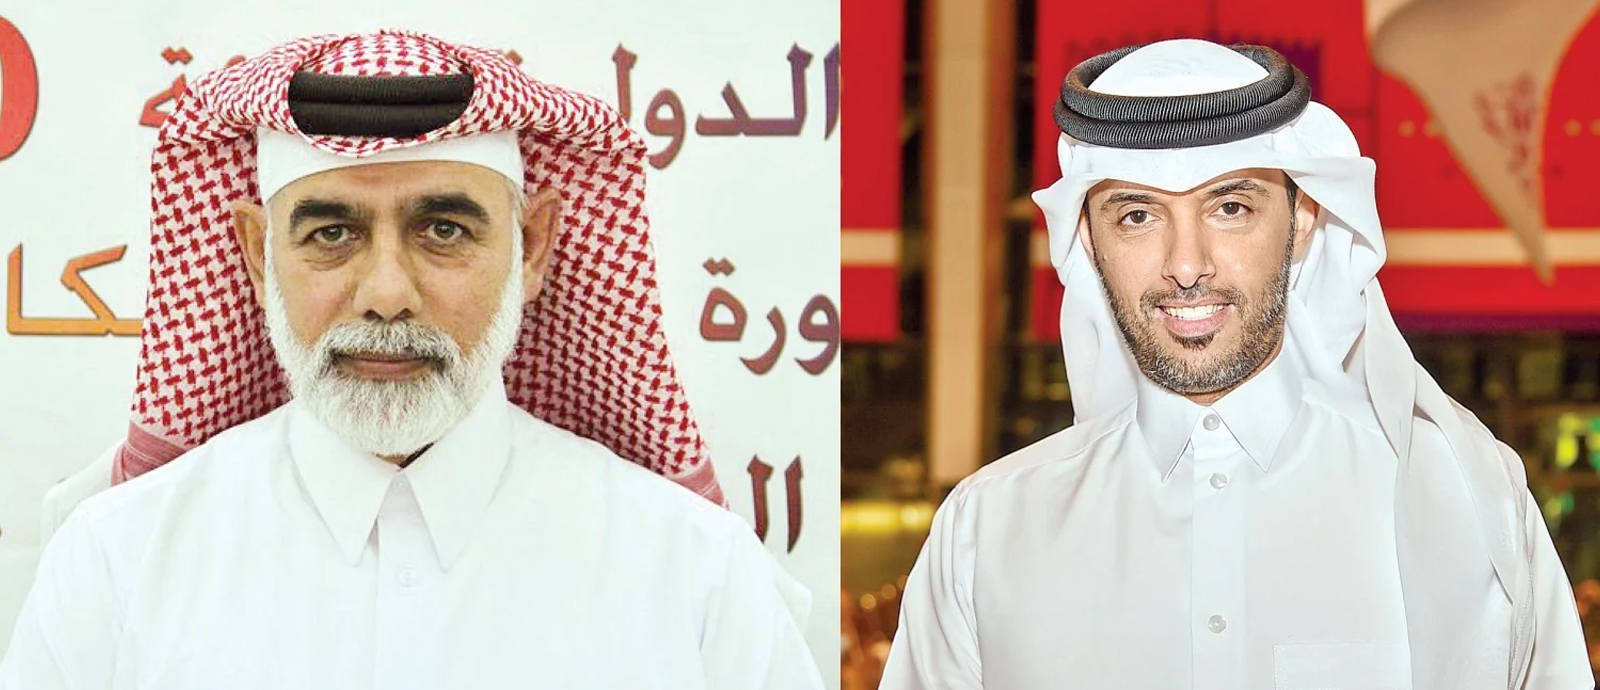 الاتحاد الدولي للرماية يختار عضوين قطريين للجنة الاستدامة واللجنة الفنية